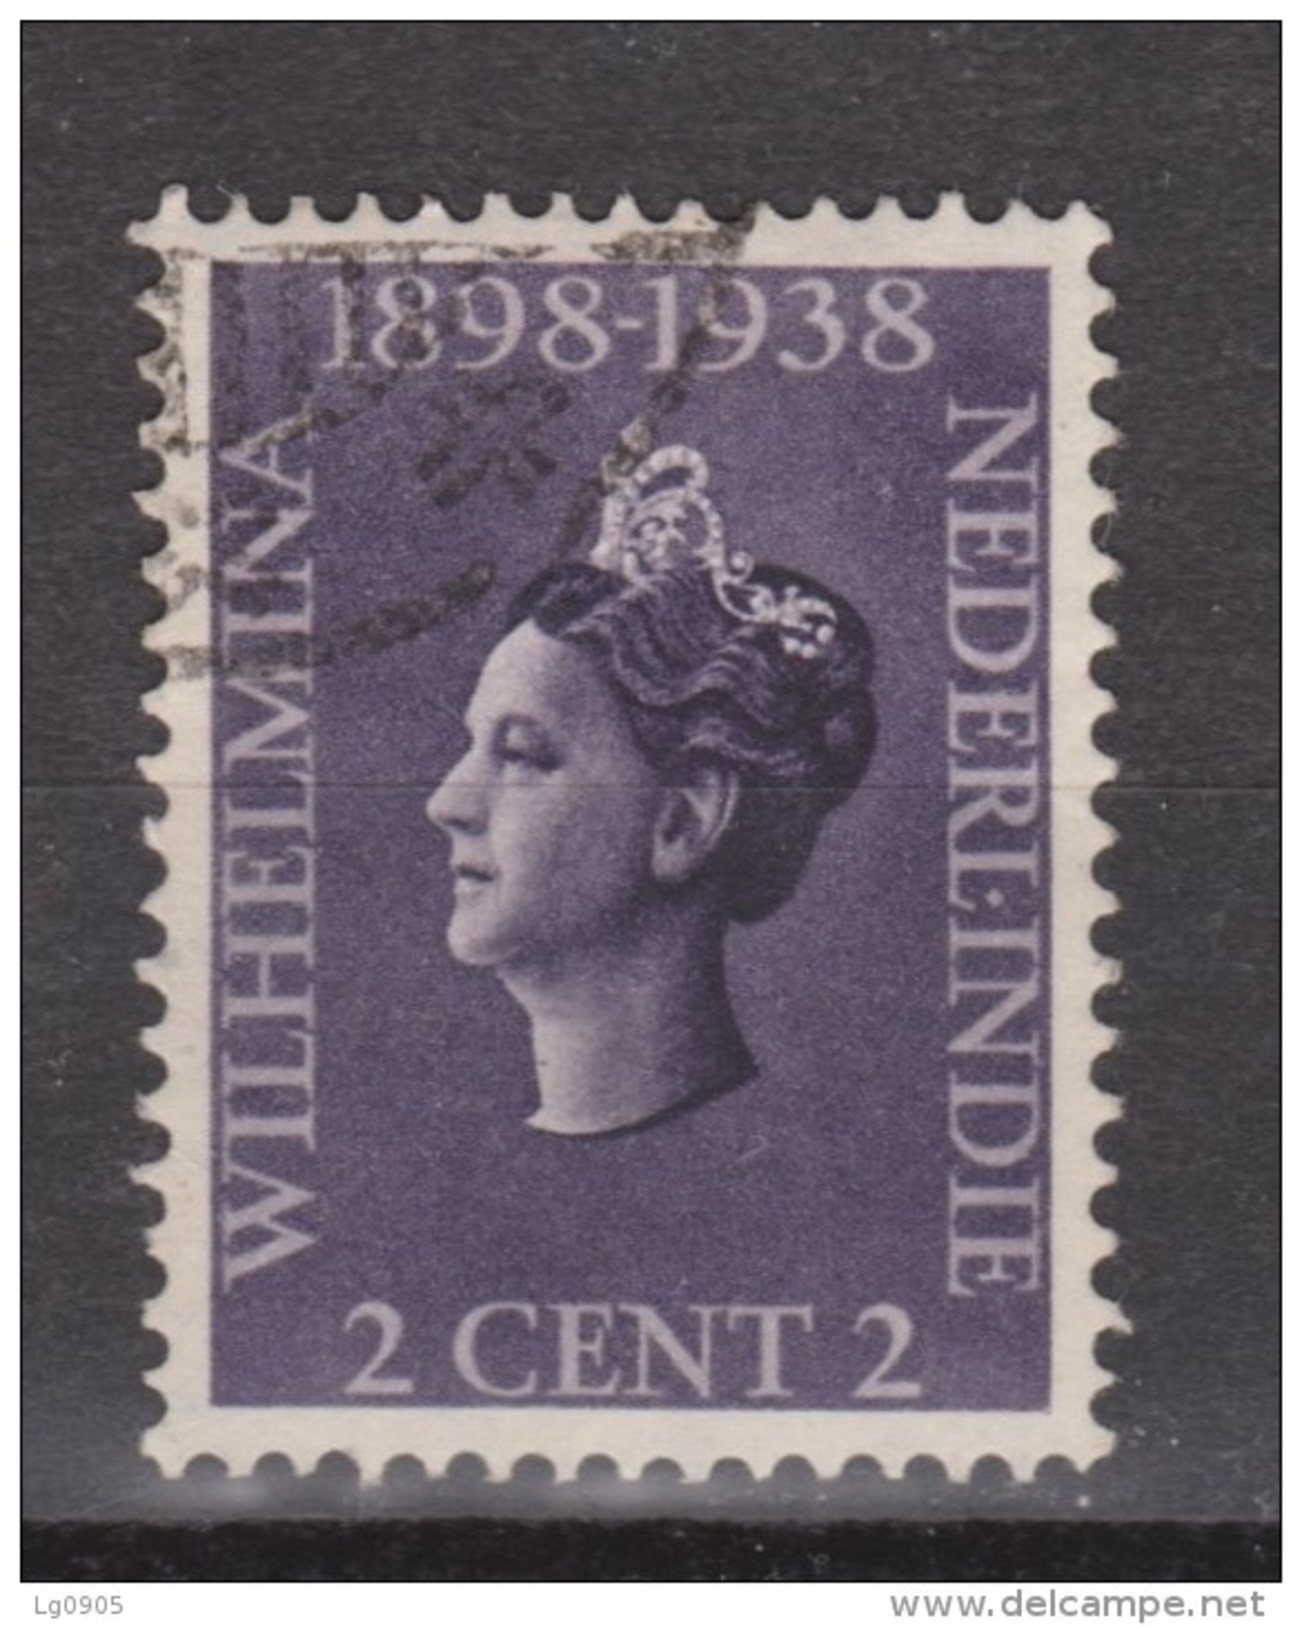 Nederlands Indie 235 Used ; Koningin, Queen, Reine, Reina Wilhelmina 1938 Netherlands Indies PER PIECE - Nederlands-Indië